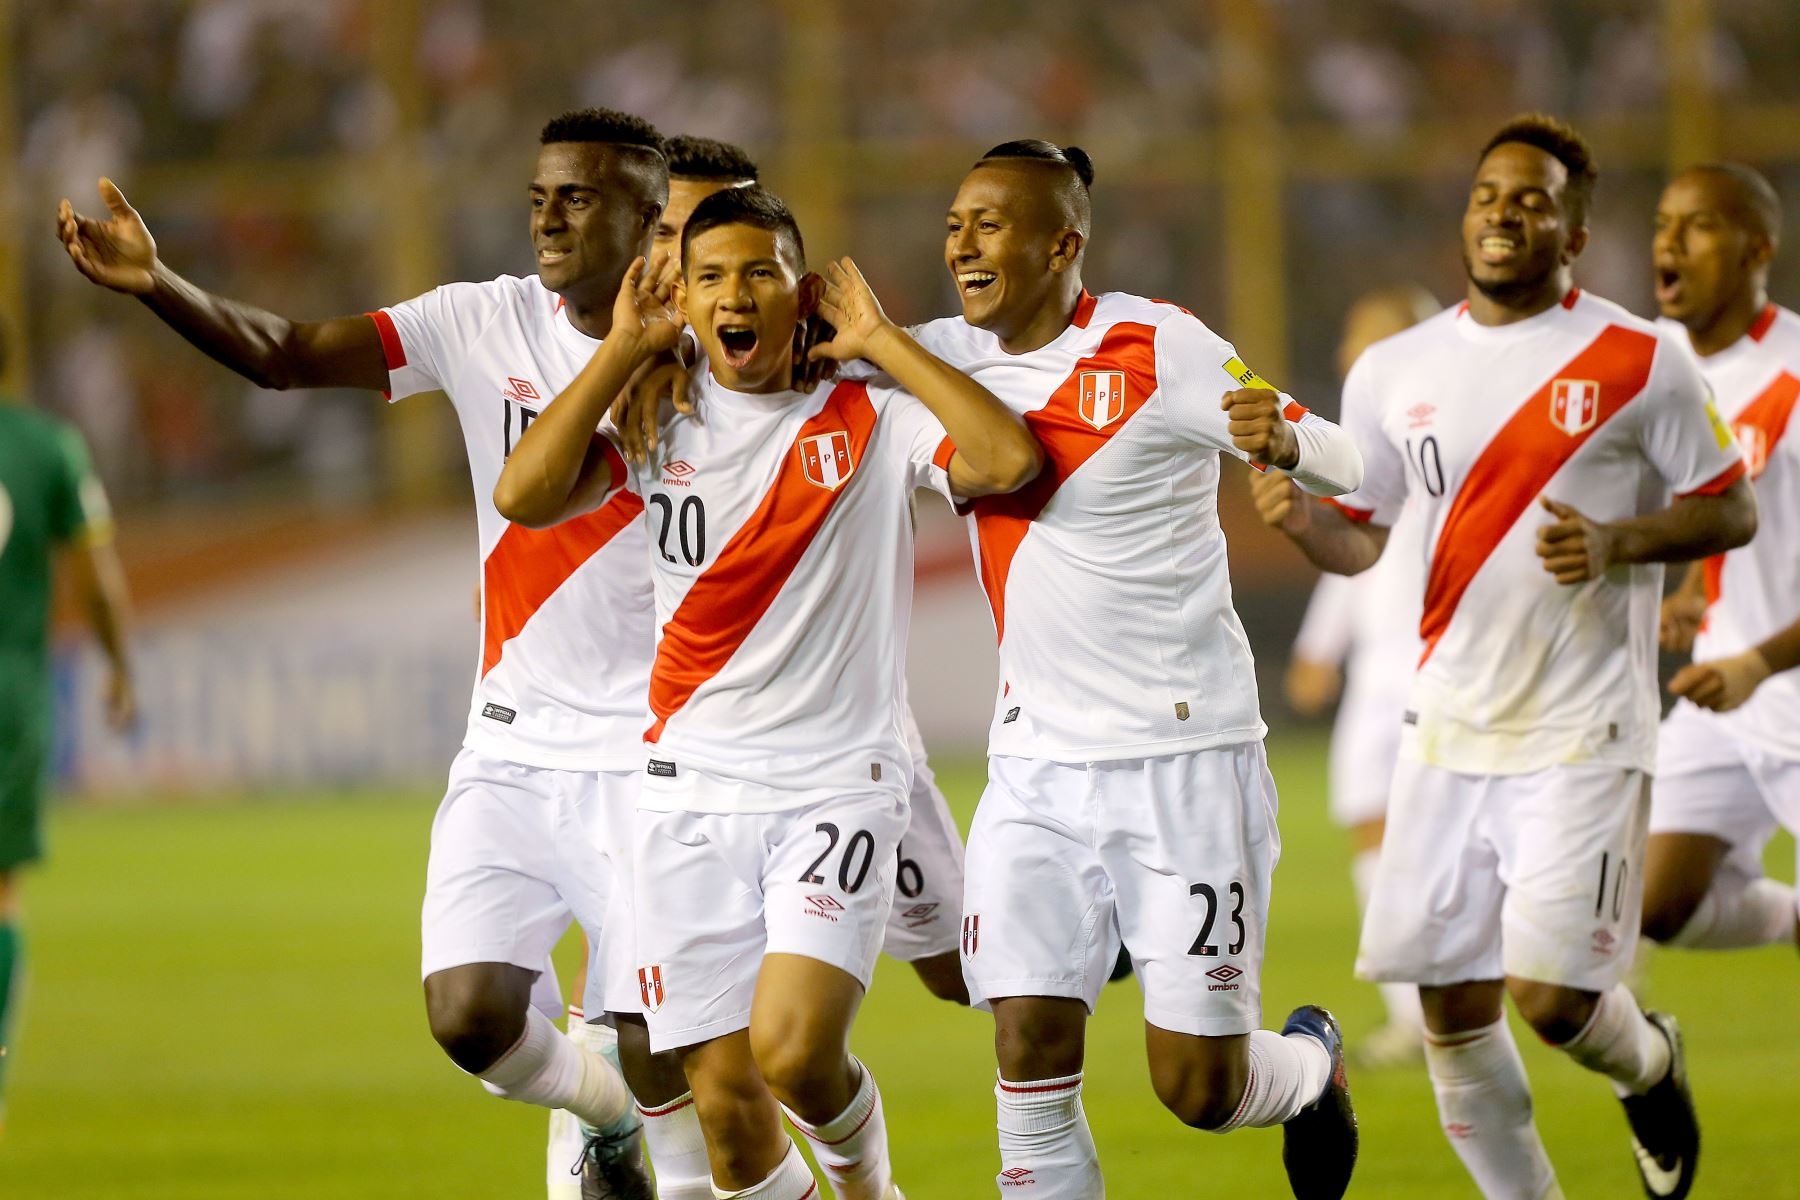 Peru chiến thắng áp đảo đội khách trên sân nhà